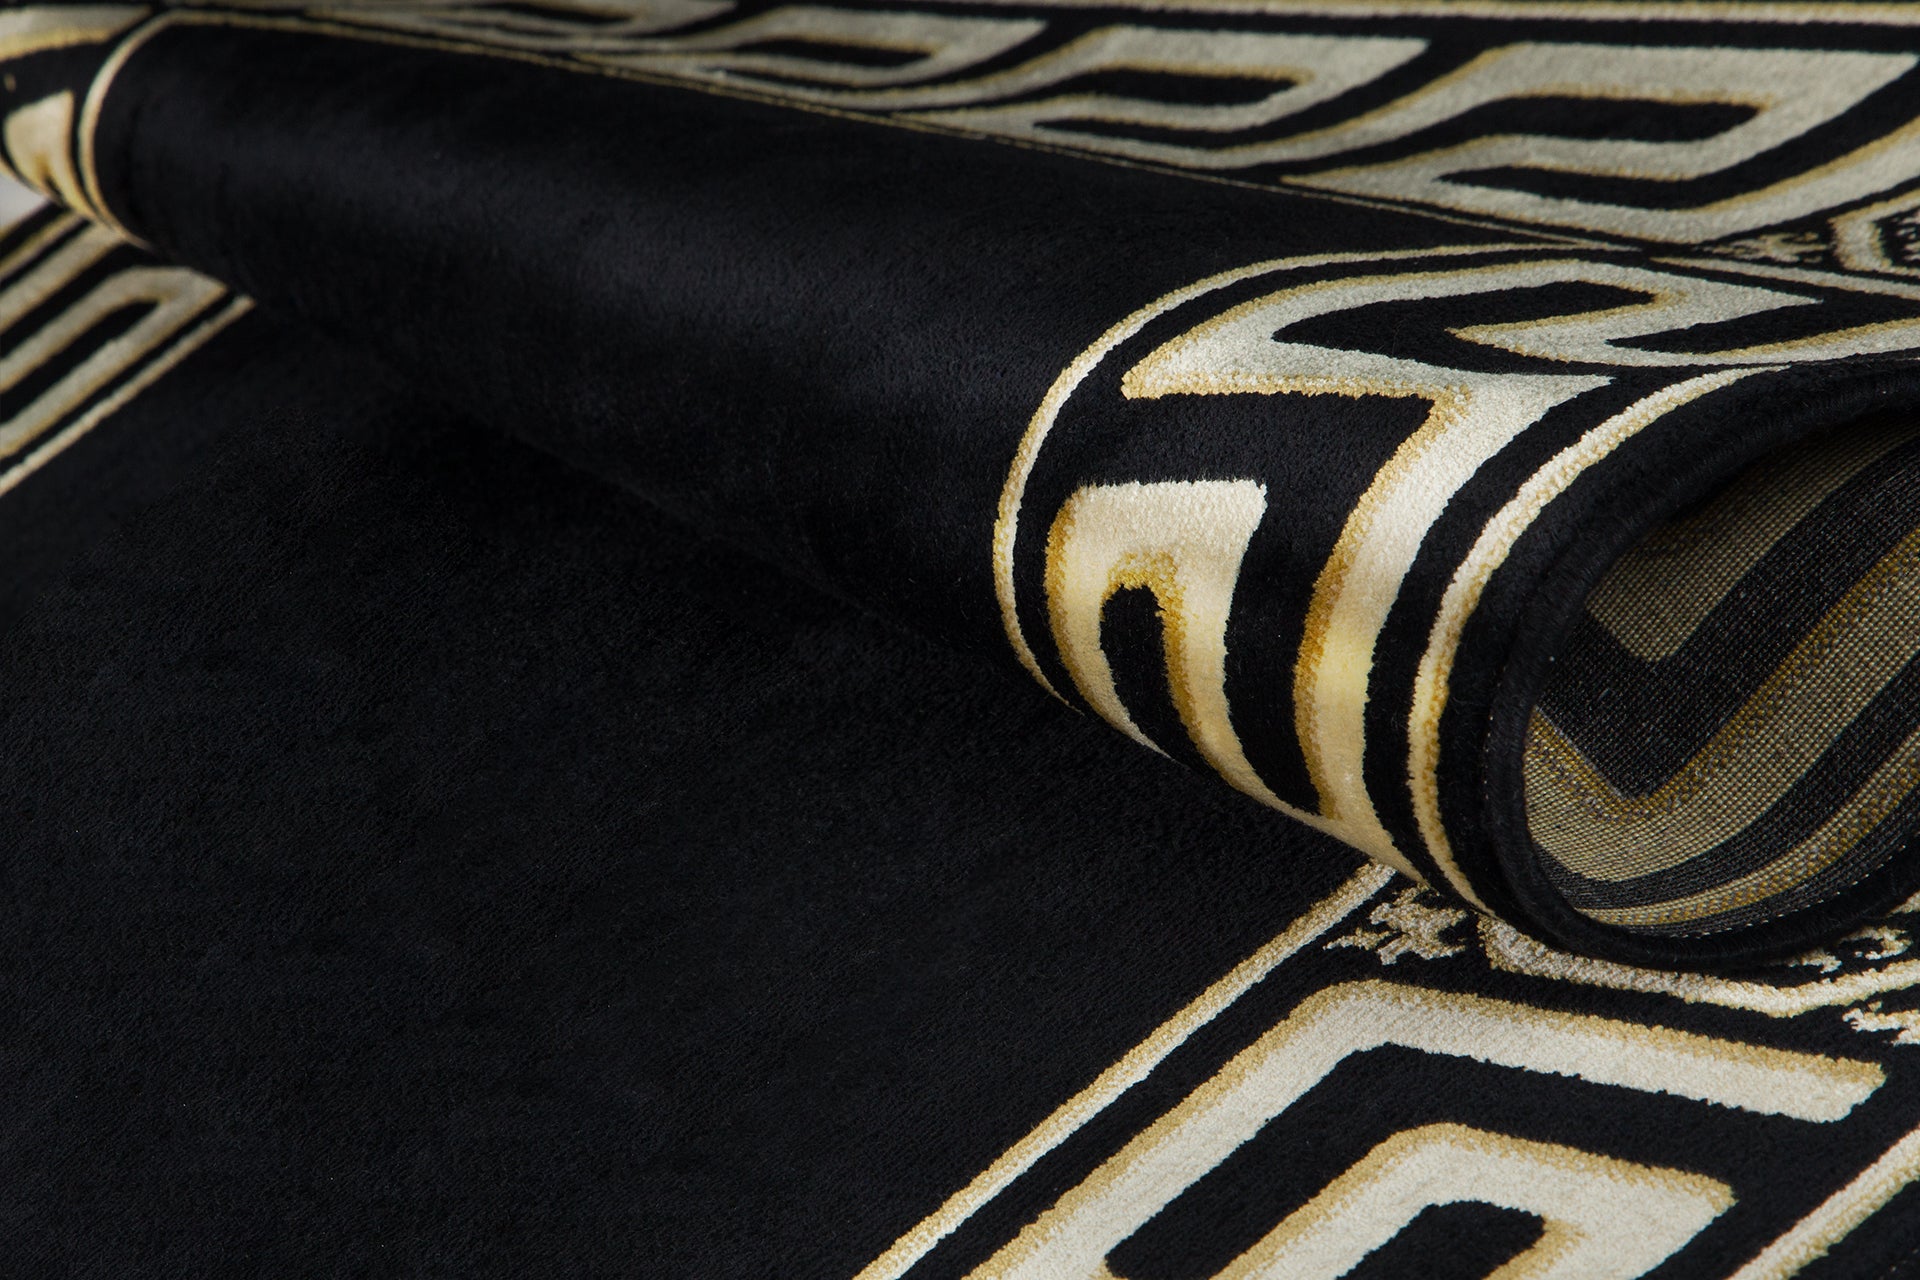 Premium Designer Teppichläufer schwarz gold mit Mäander Motiv - 100% Viskose & Seidenglanz